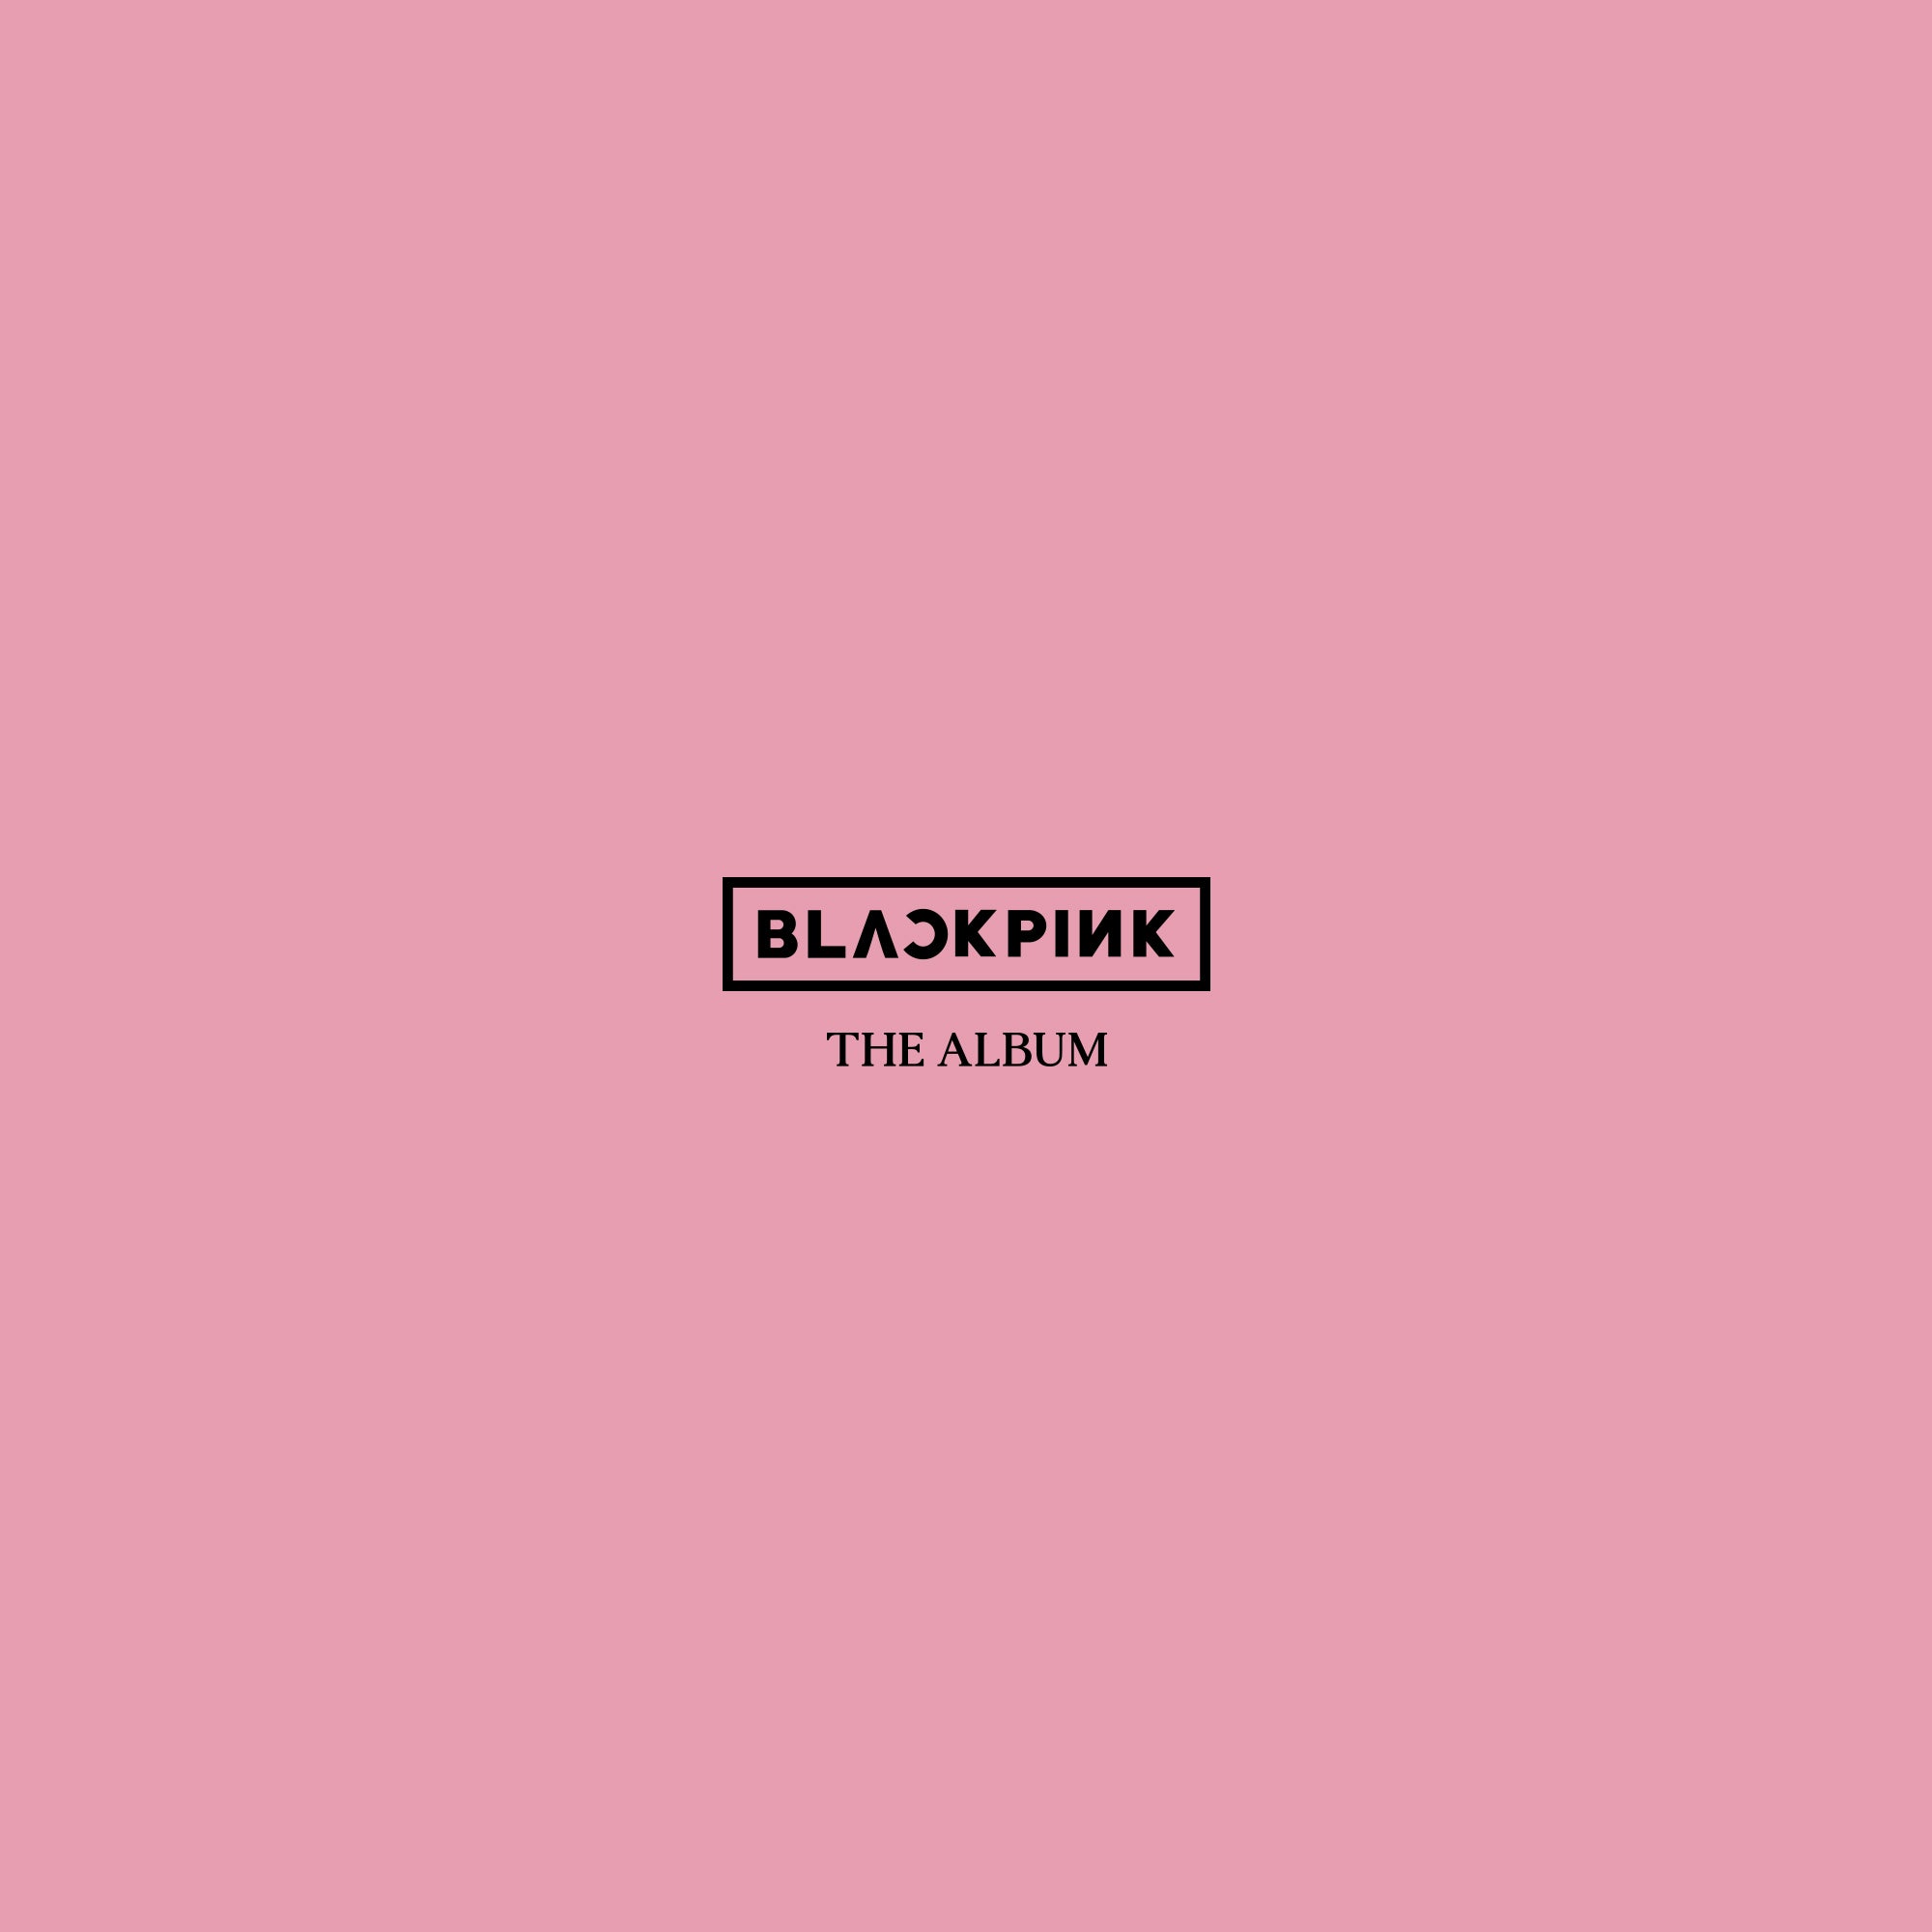 Kshopina - Blackpink - The Album - Saudi Arabia - Riyadh - Set 4